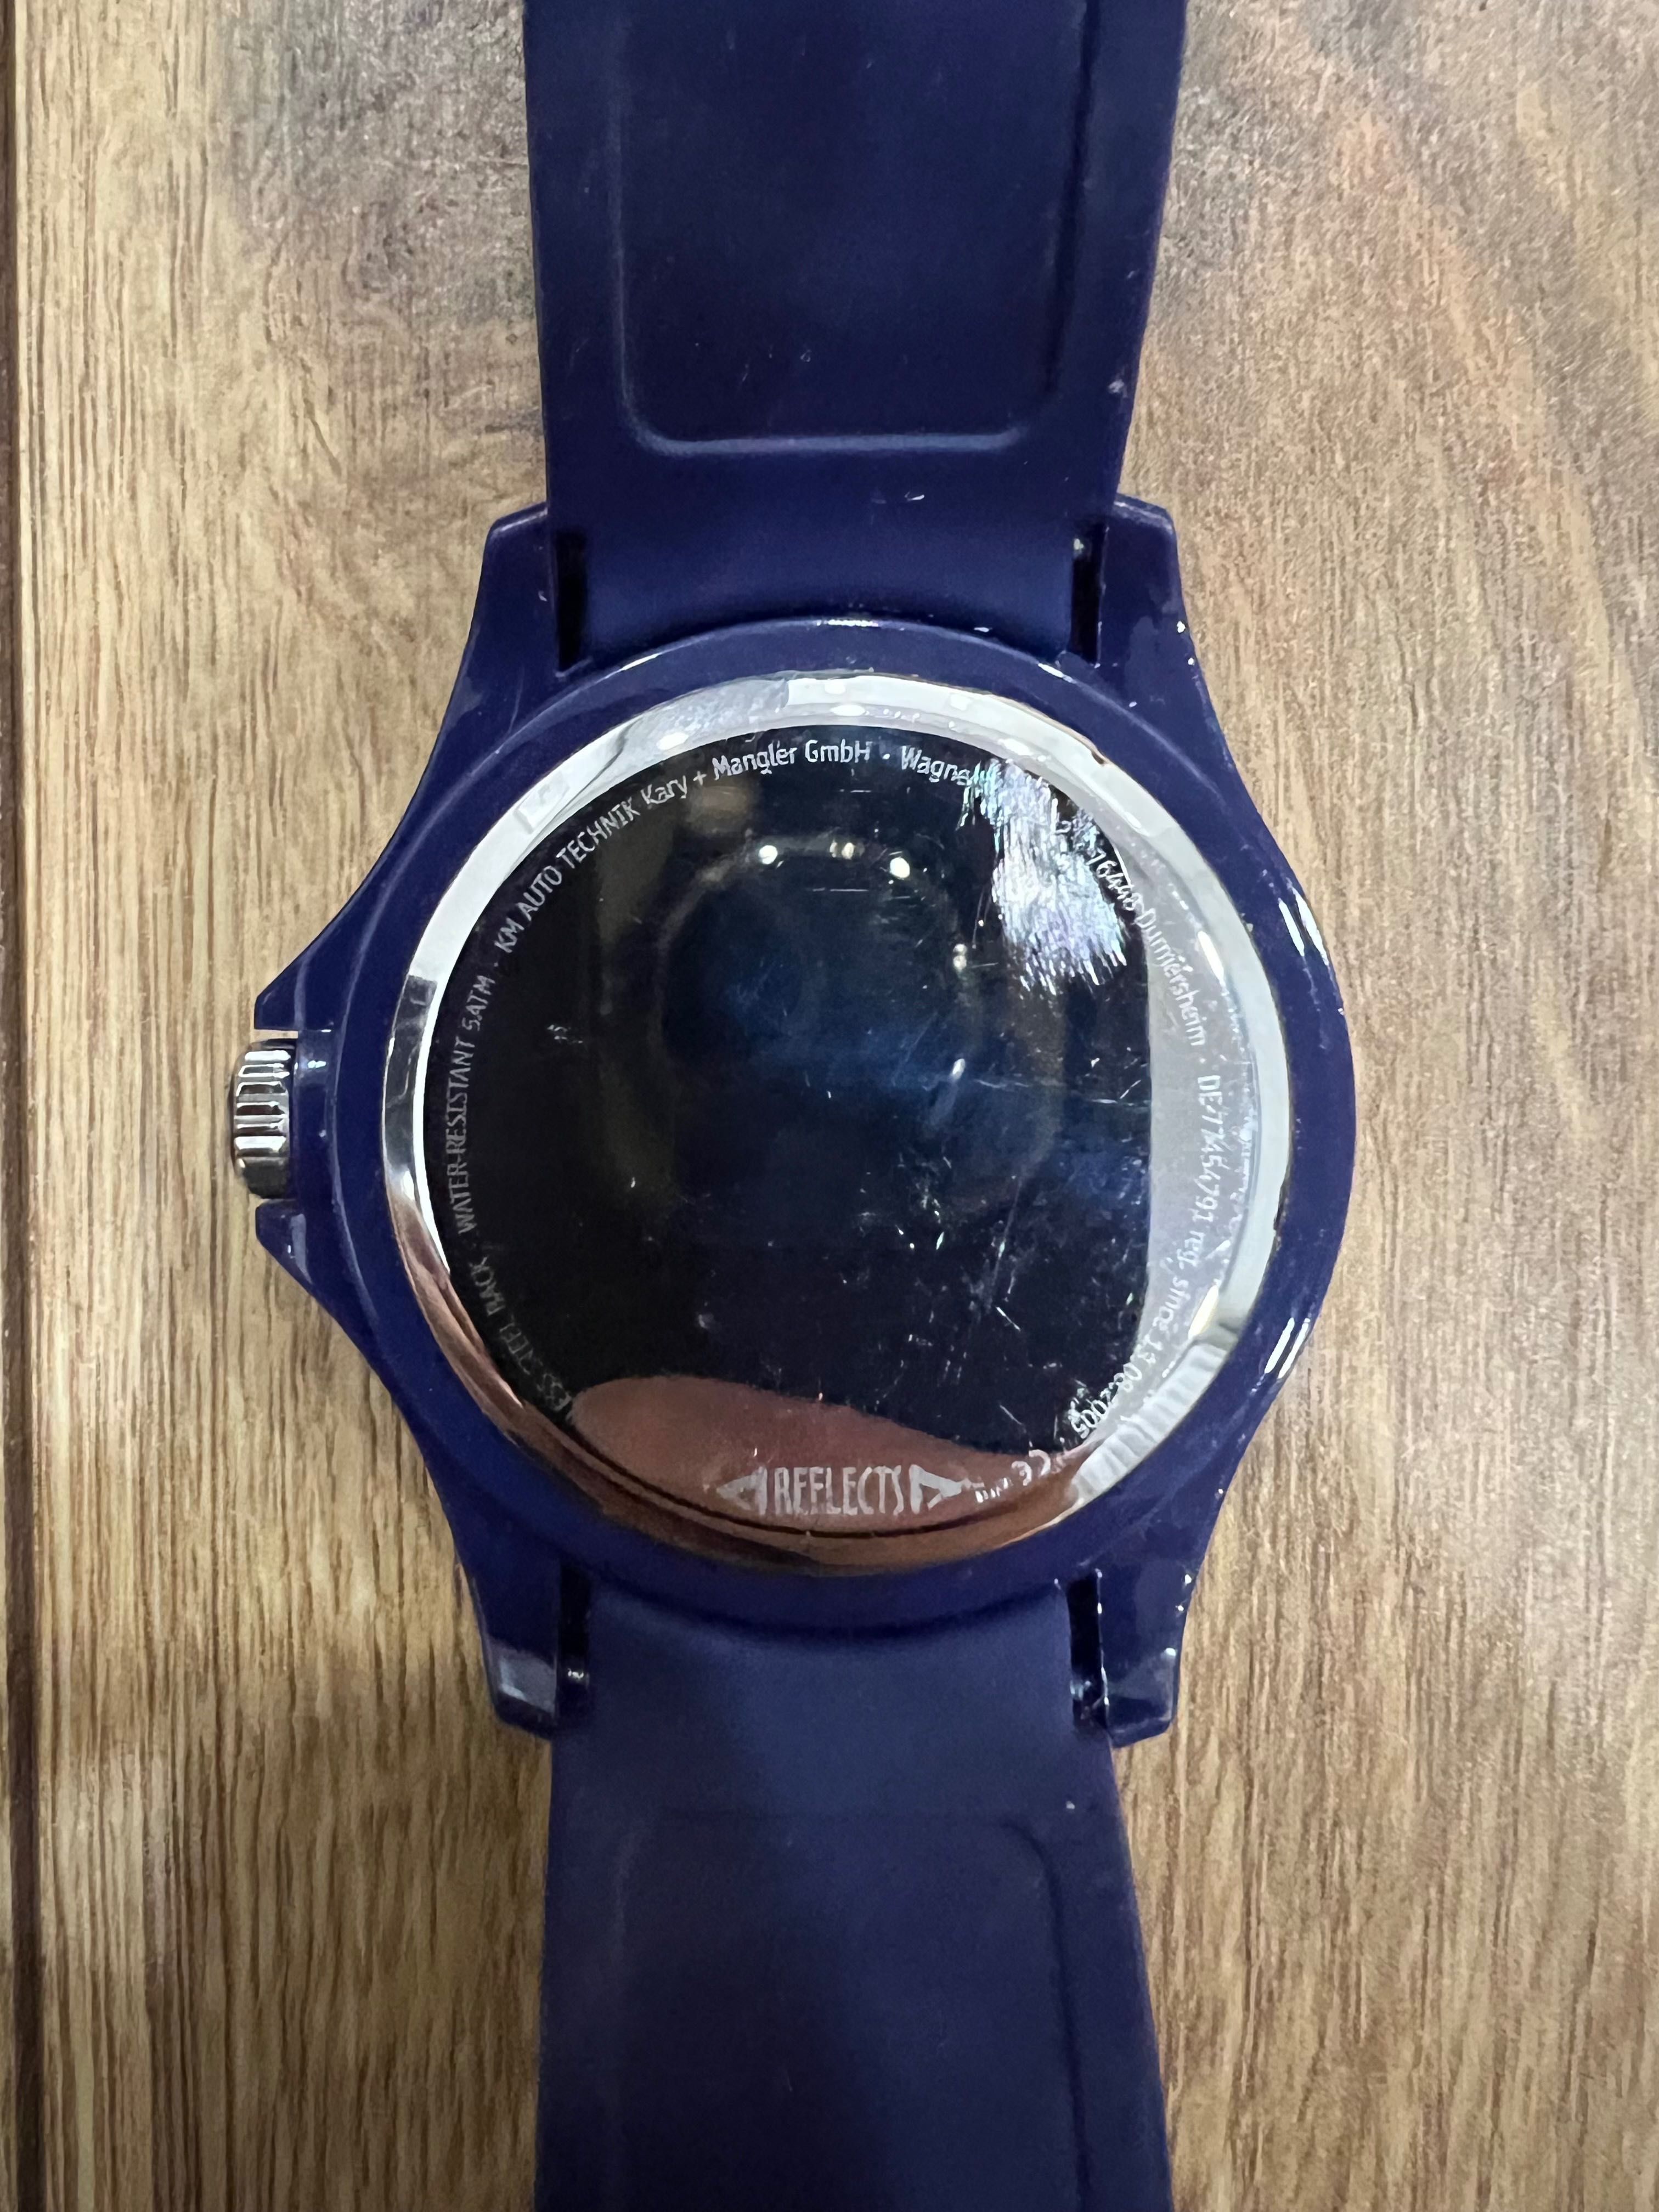 Zegarek promocyjny KM Auto Technik, niebieski